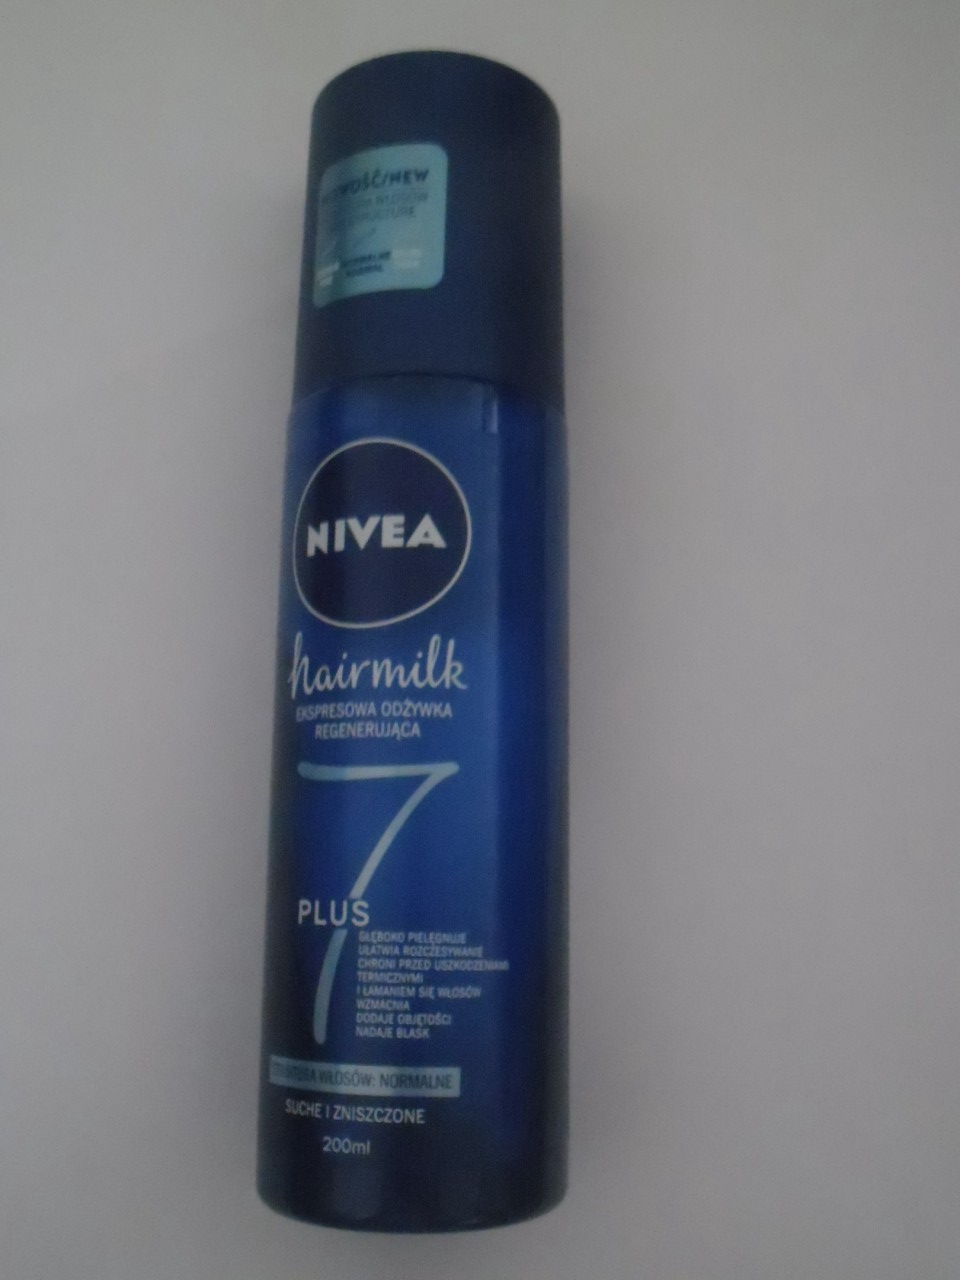 NIVEA Hair Milk Expresowa Odżywka spray do 200ml